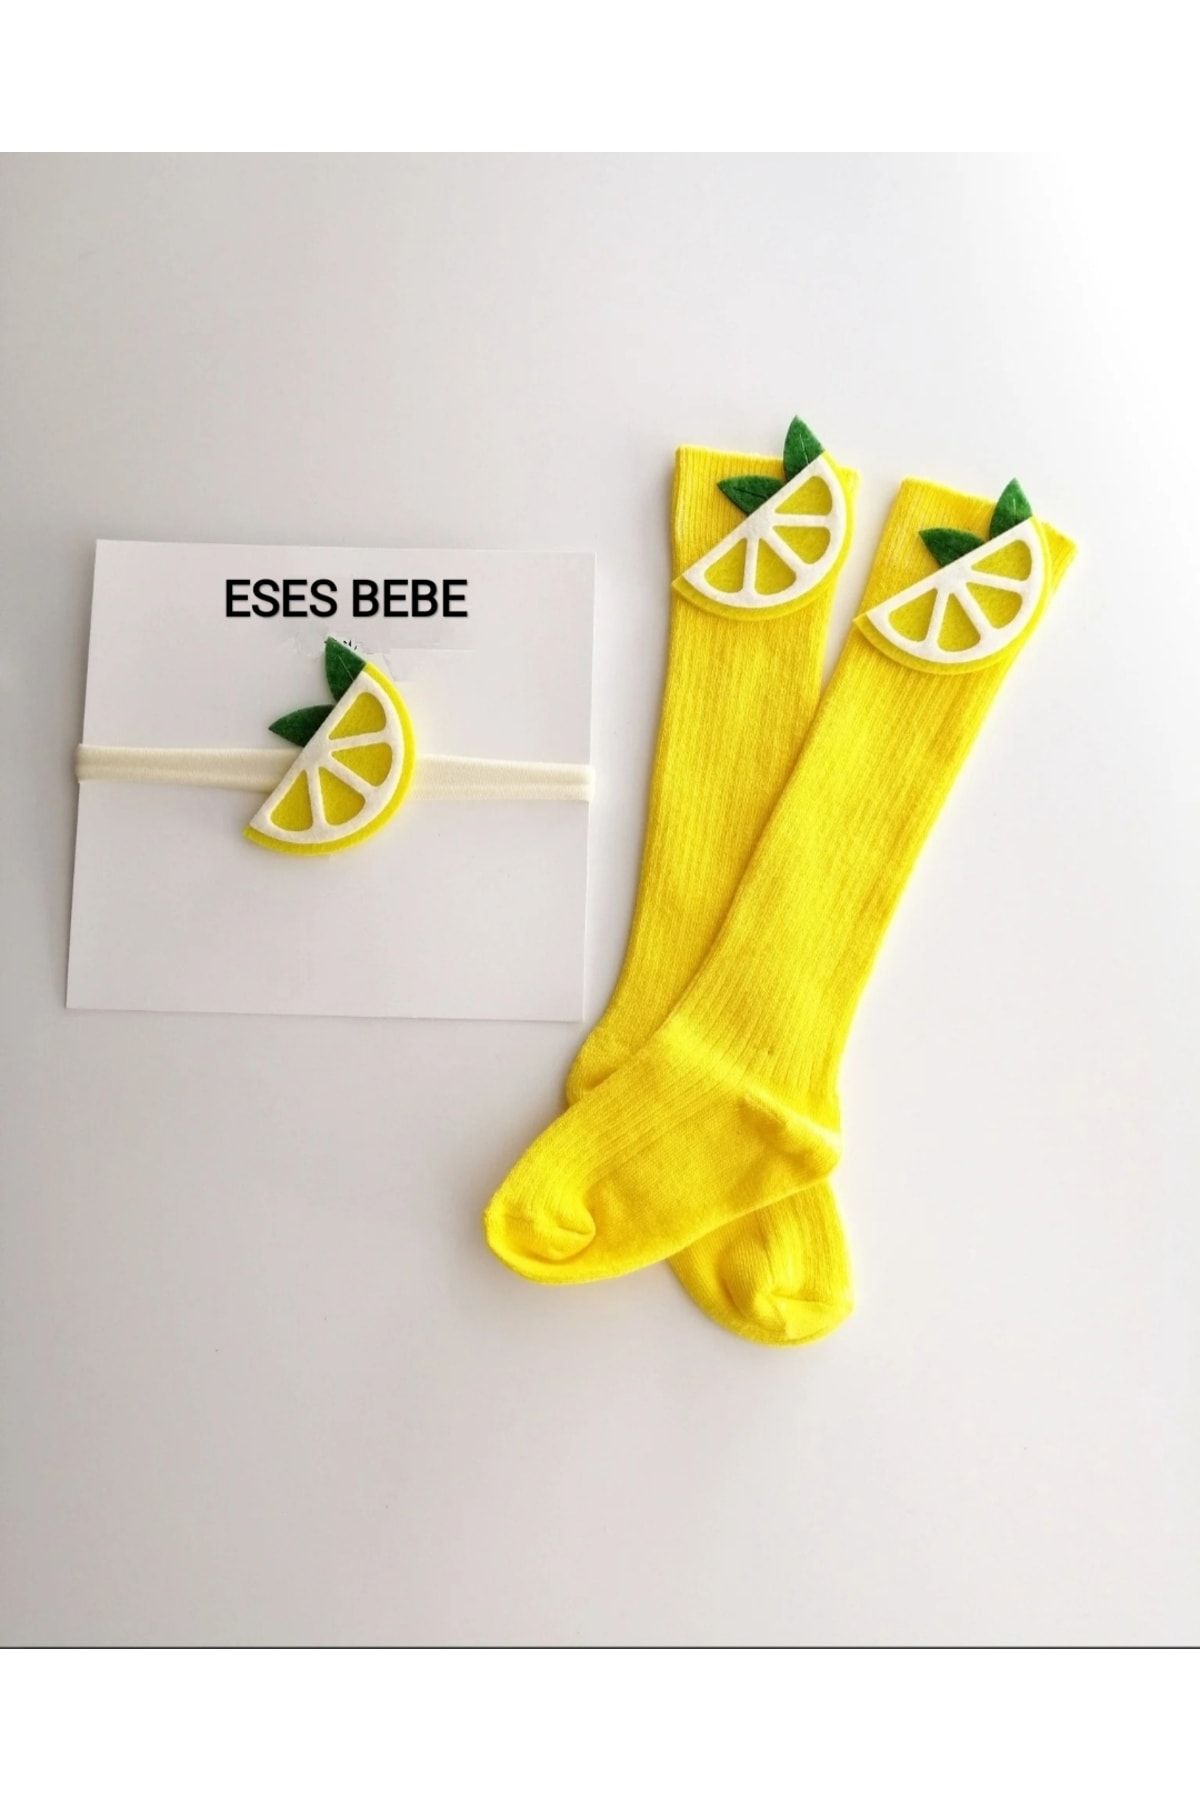 ESES BEBE Okul Çorabı Çocuk/bebek Limon Figürlü Diz Altı Çorap Ve Bandana Seti